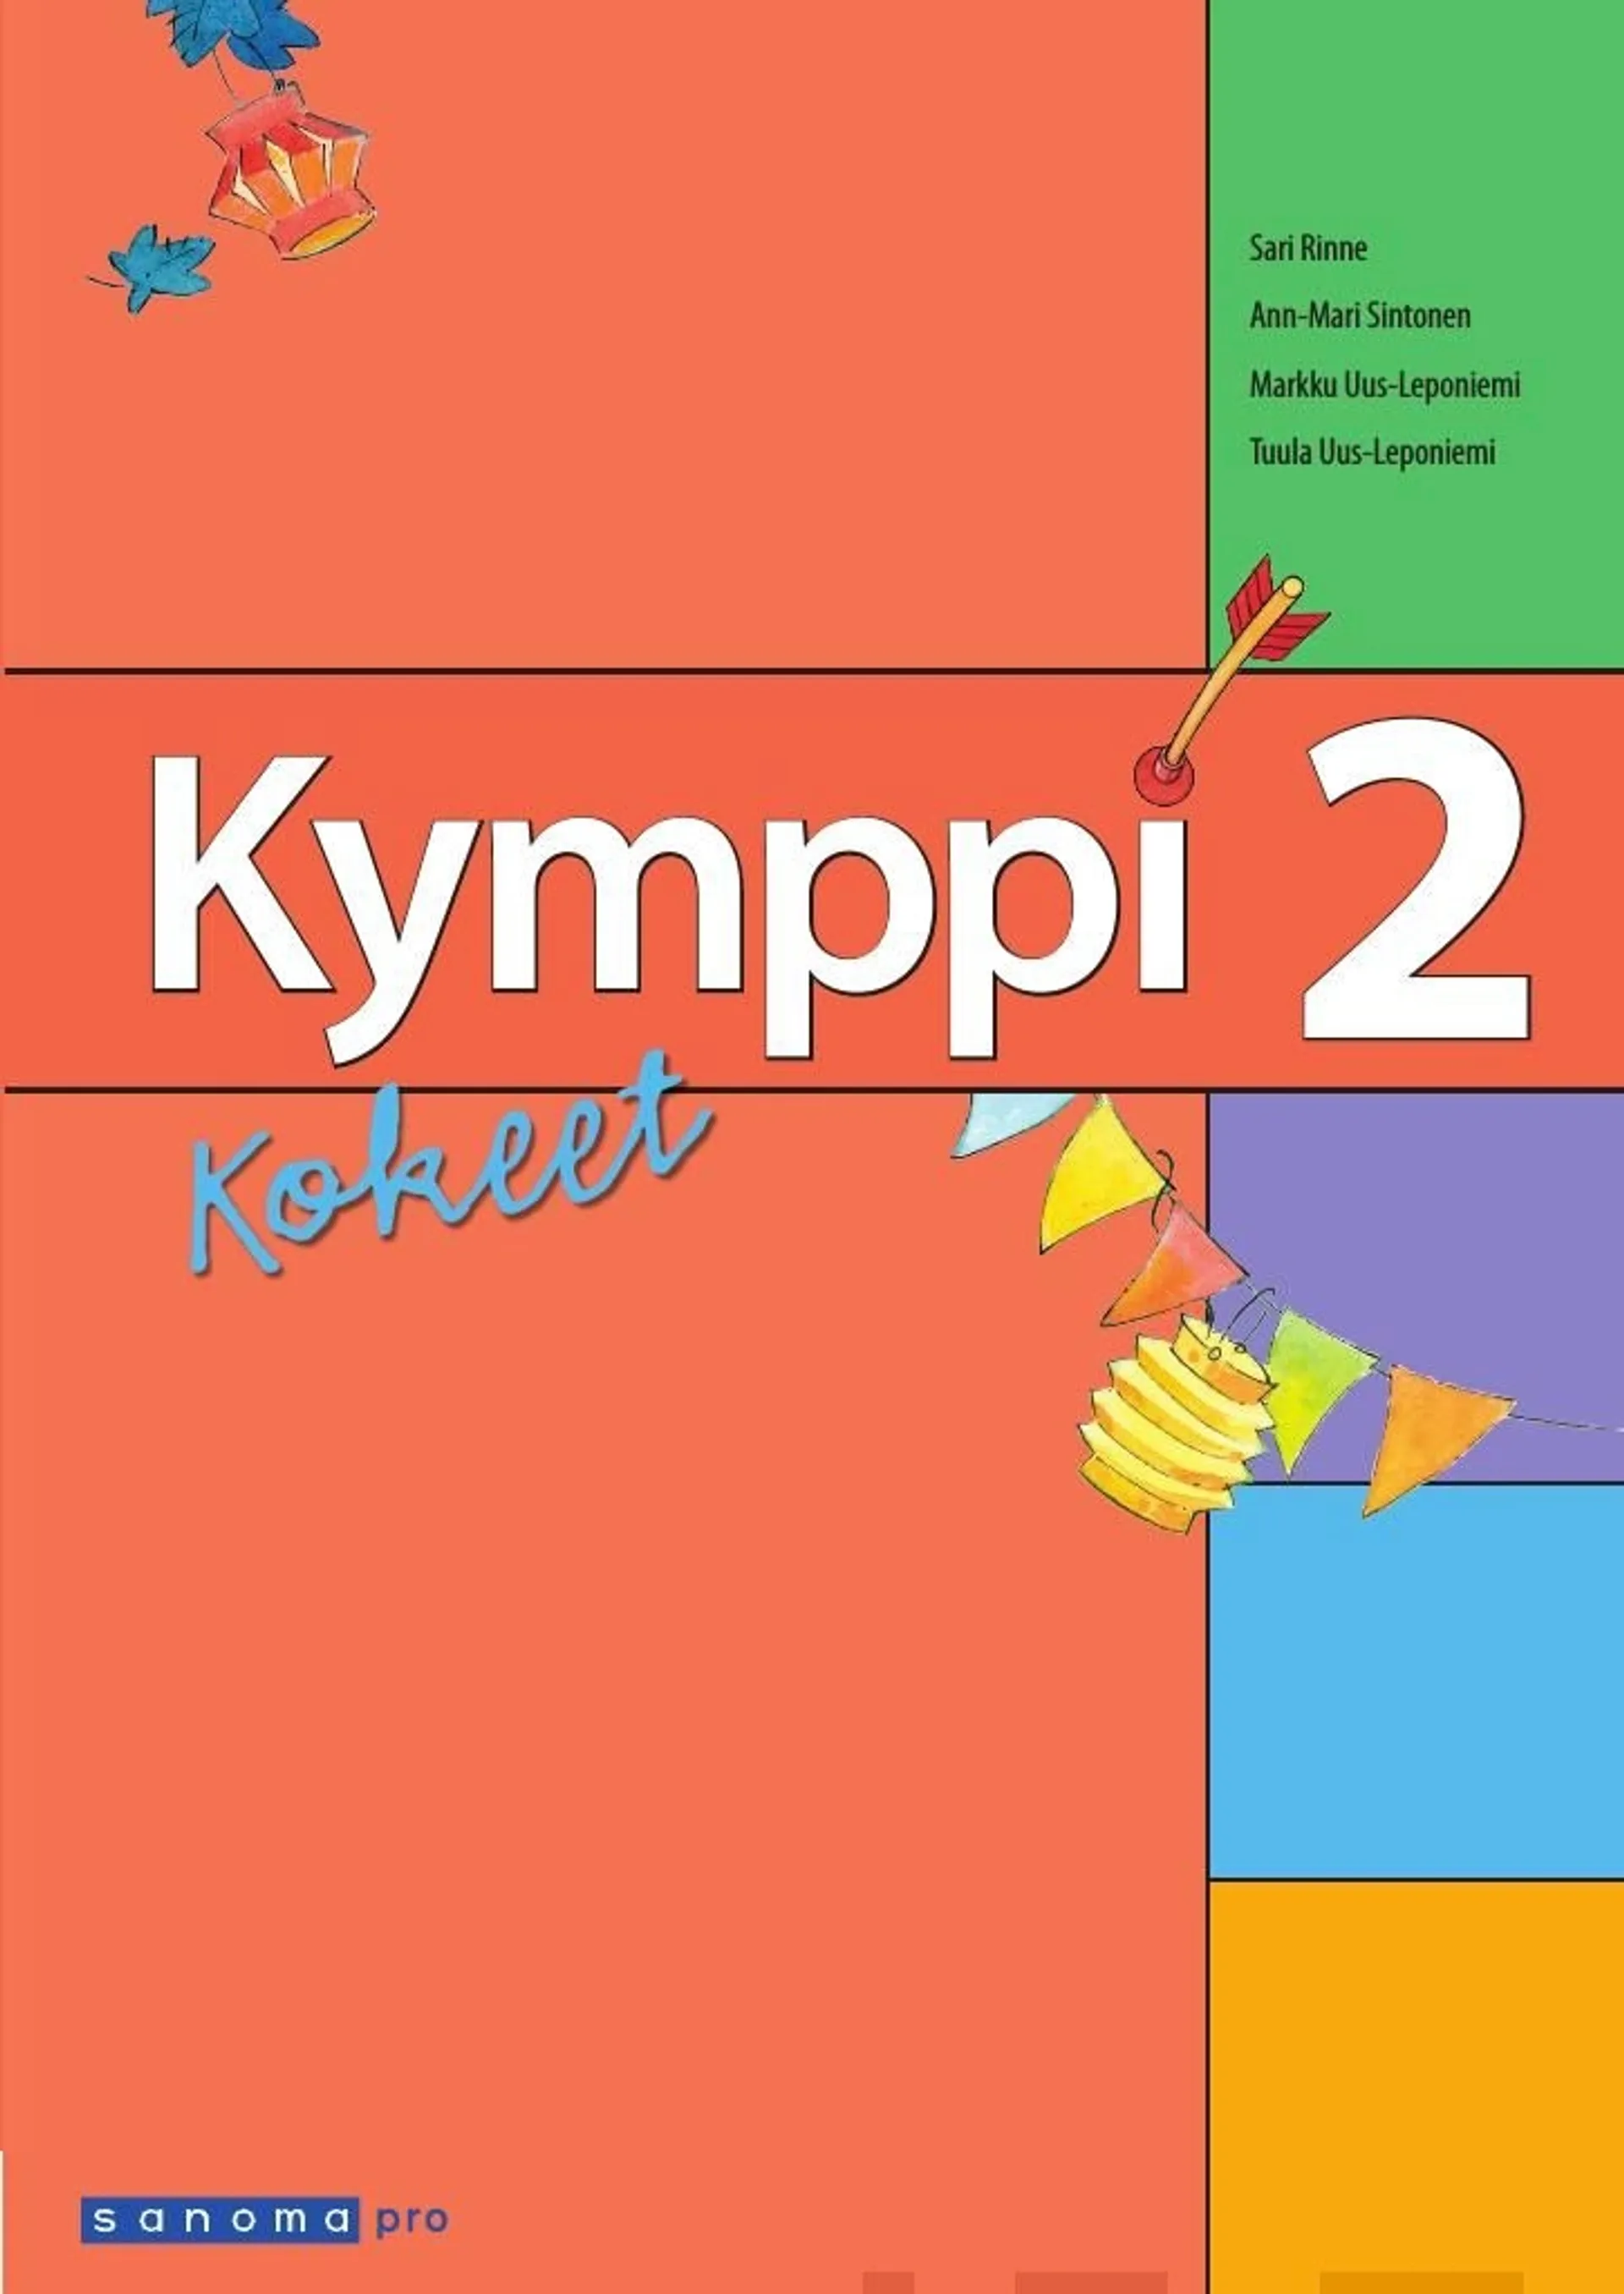 Uus-Leponiemi, Kymppi 2 Kokeet (OPS 2016)